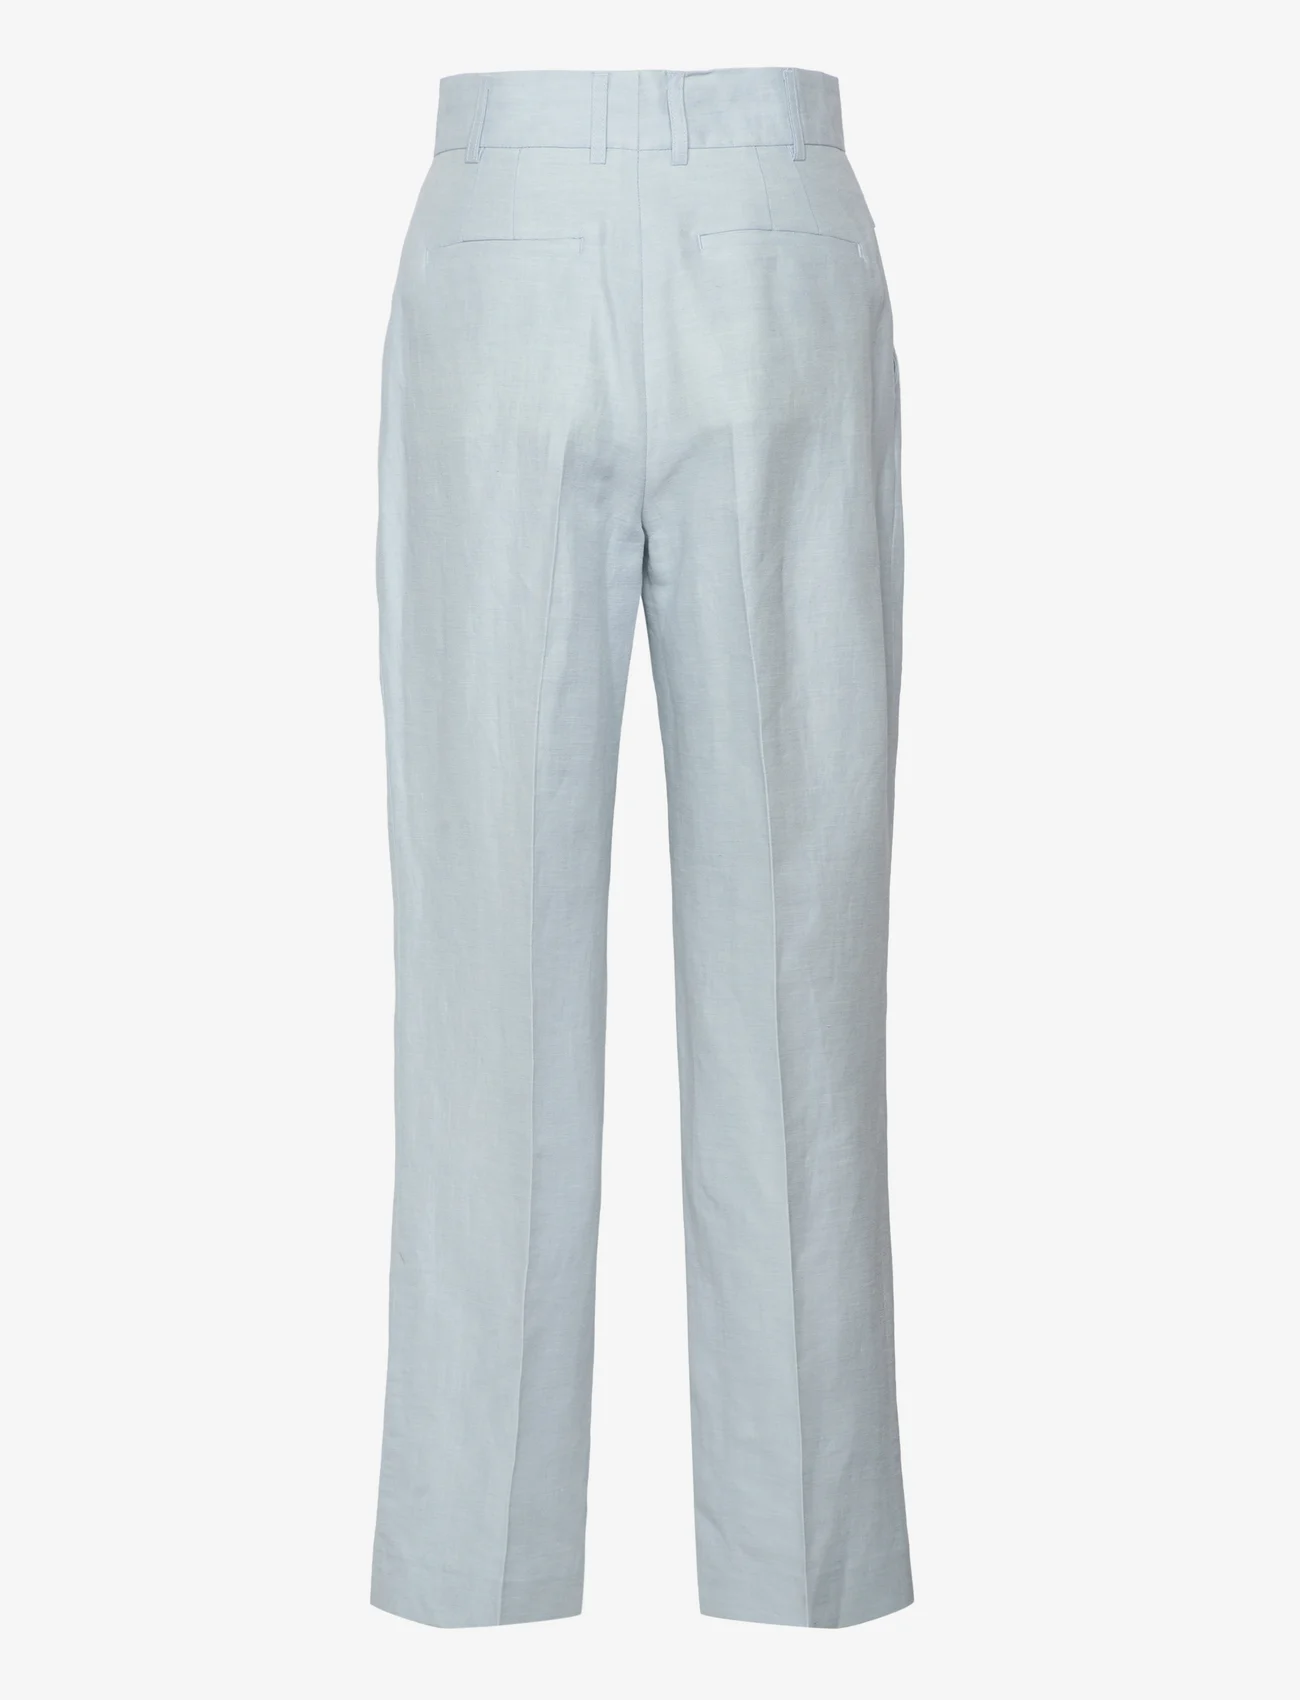 Day Birger et Mikkelsen - Charles - Solid Linen - linen trousers - light blue - 1